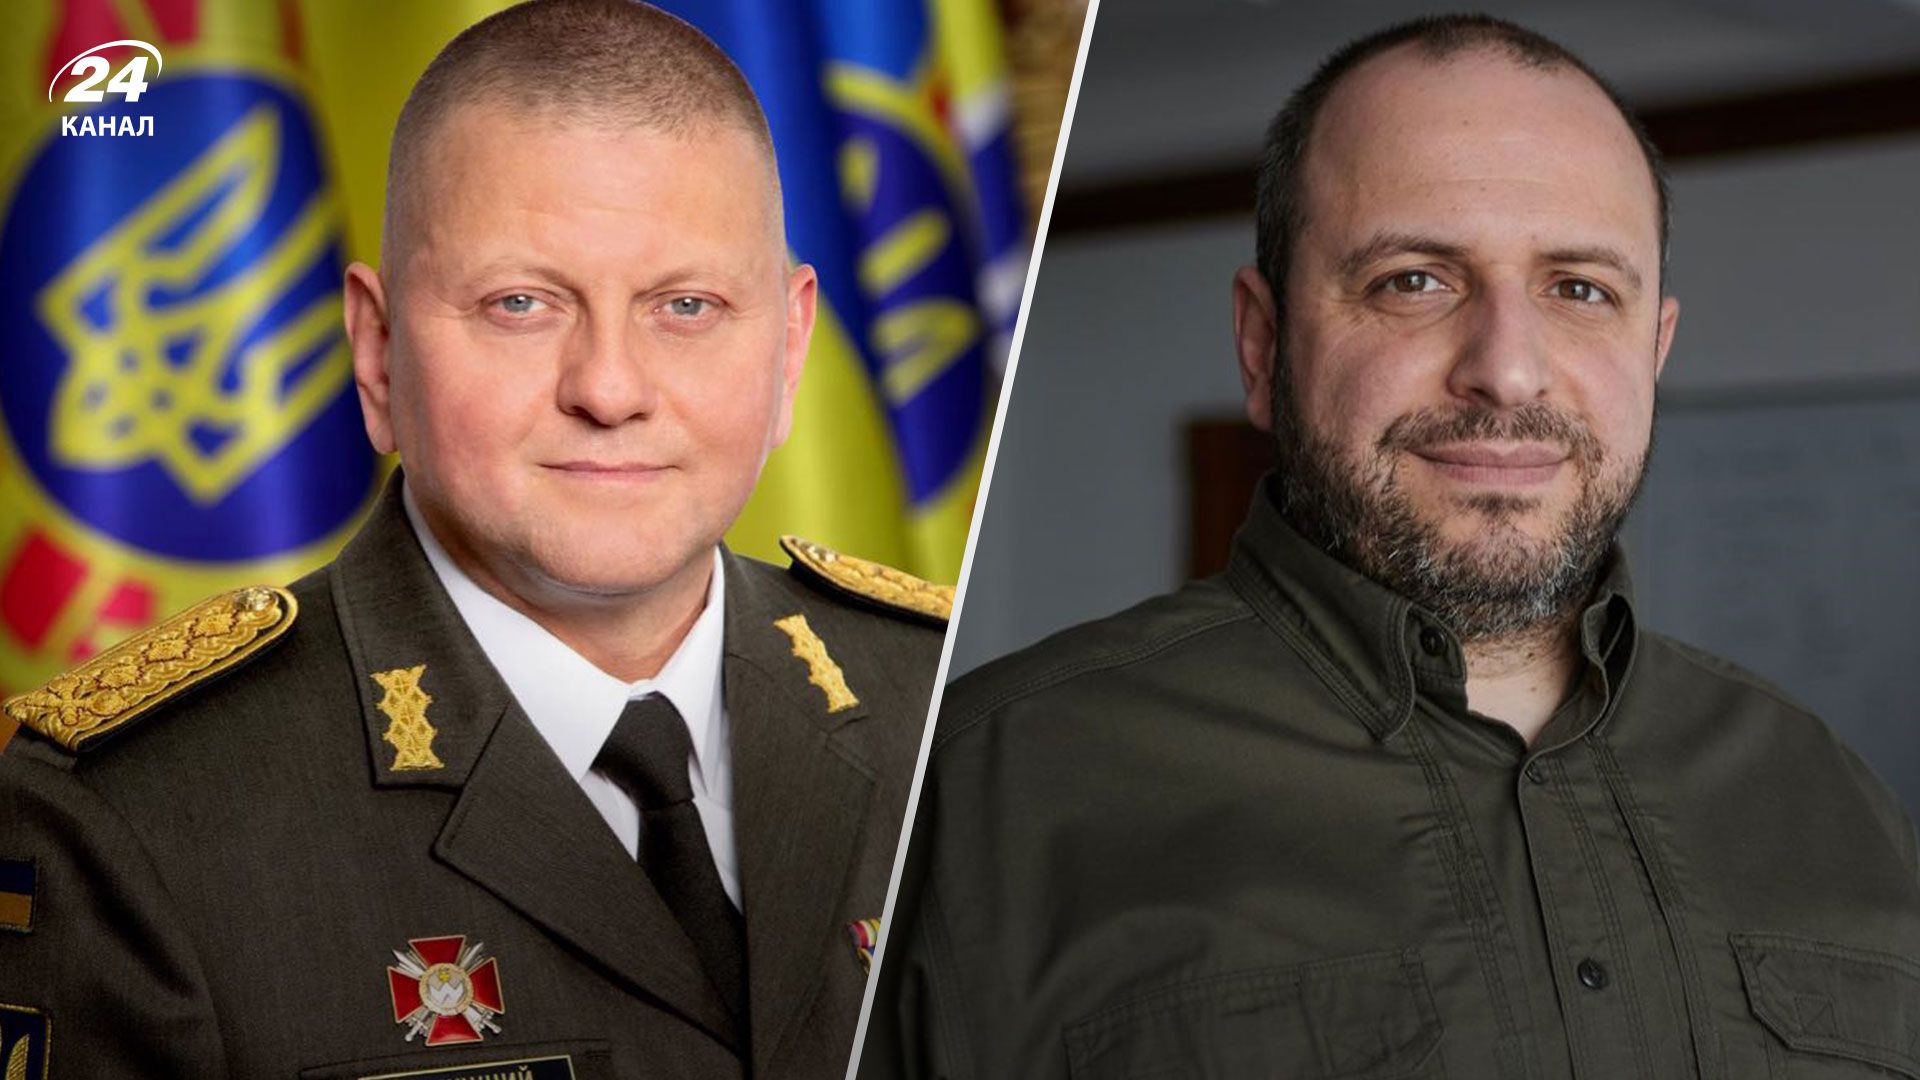 Министр обороны прокомментировал информацию об "увольнении Залужного" - 24 Канал